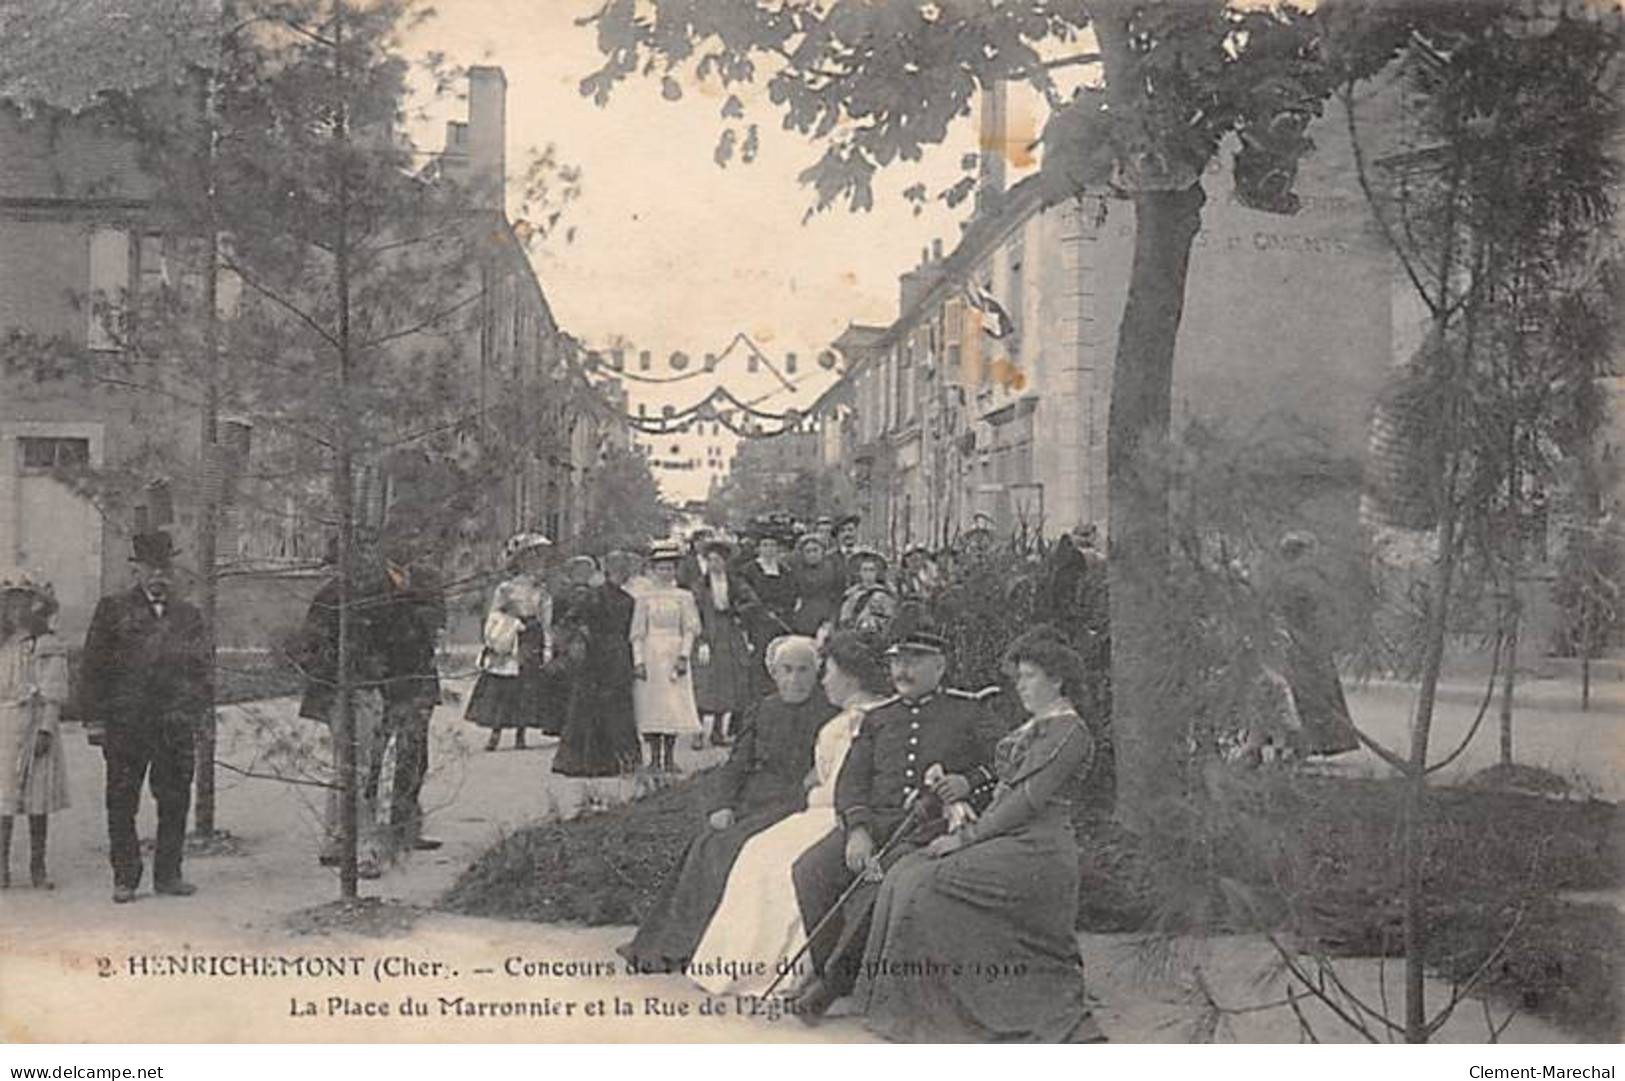 HENRICHEMONT - Concours De Musique De Septembre 1910 - La Place Du Marronnier Et La Rue De L'Eglise - Très Bon état - Henrichemont